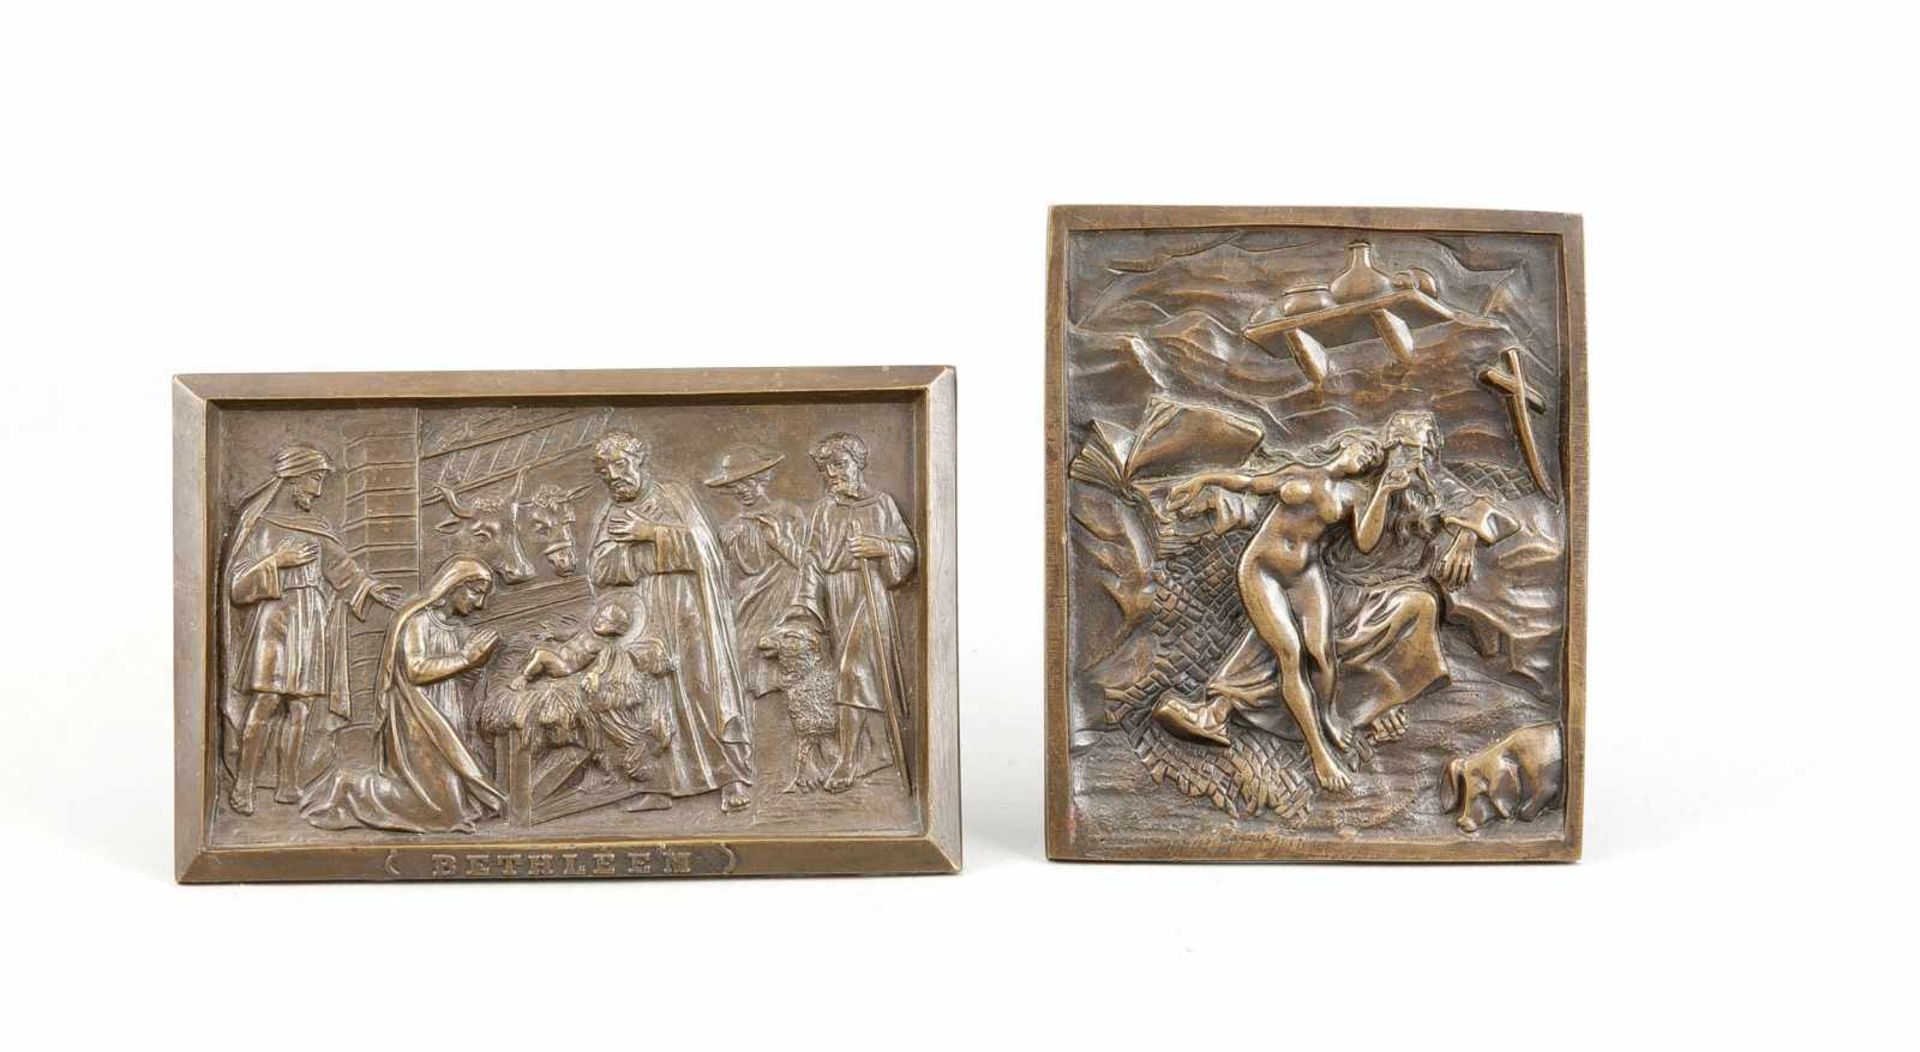 Zwei Bronzereliefs des 19. Jh., Christi Geburt (bez. Bethleem), sowie von nackter Frau